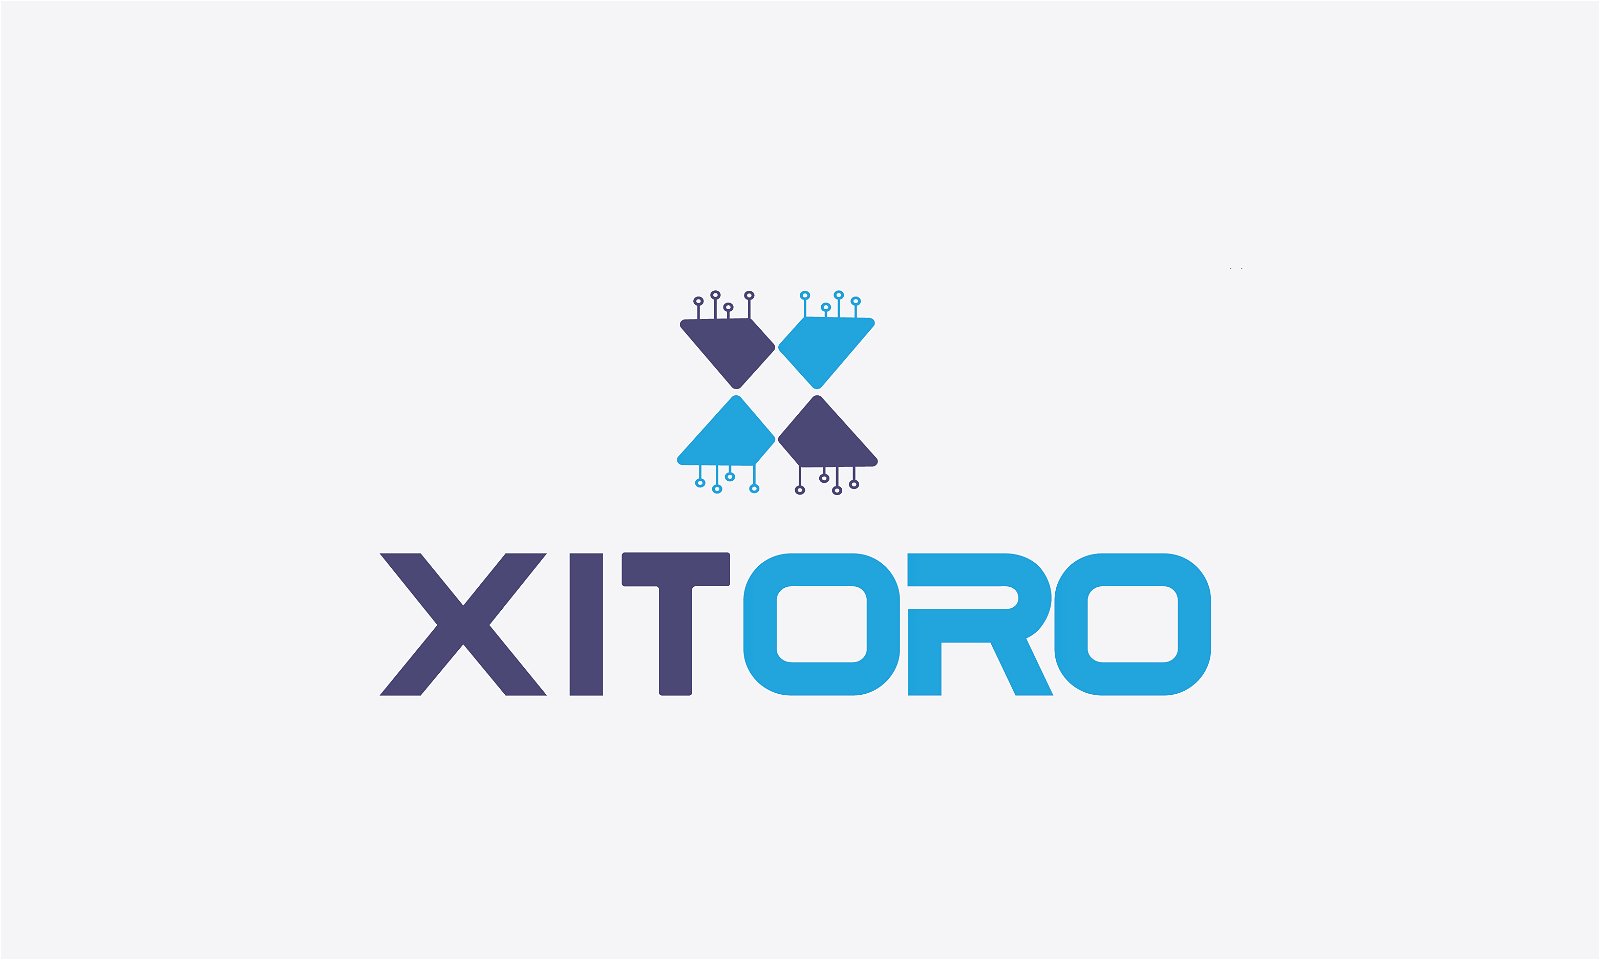 Xitoro.com - Creative brandable domain for sale